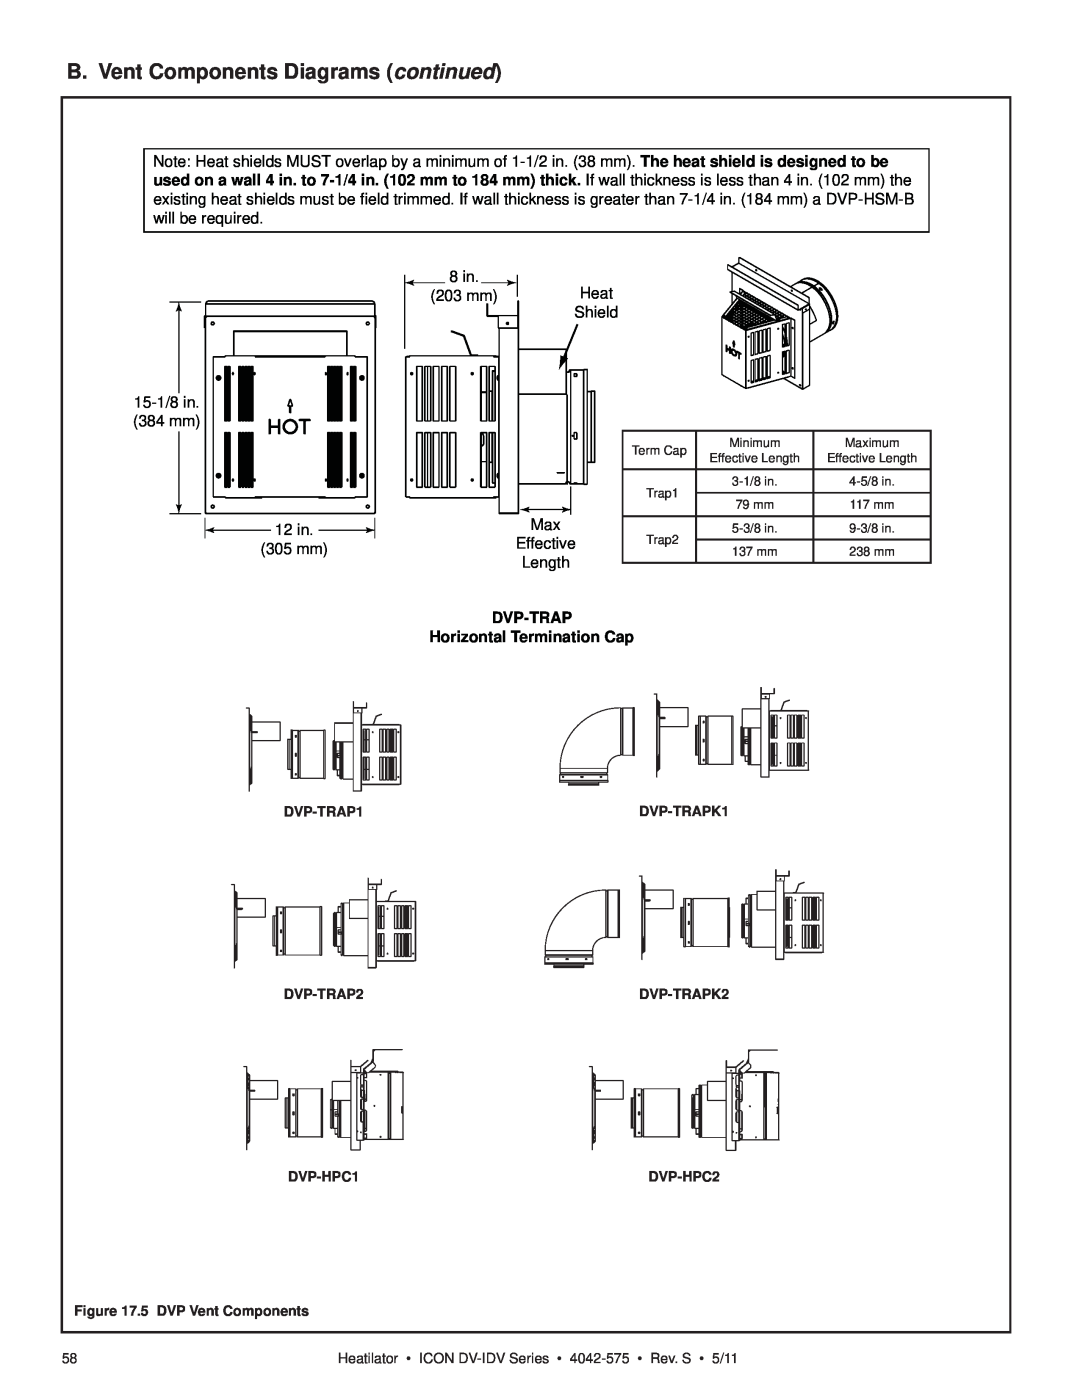 Heatiator IDV4833IT owner manual B. Vent Components Diagrams continued, DVP-TRAP Horizontal Termination Cap 